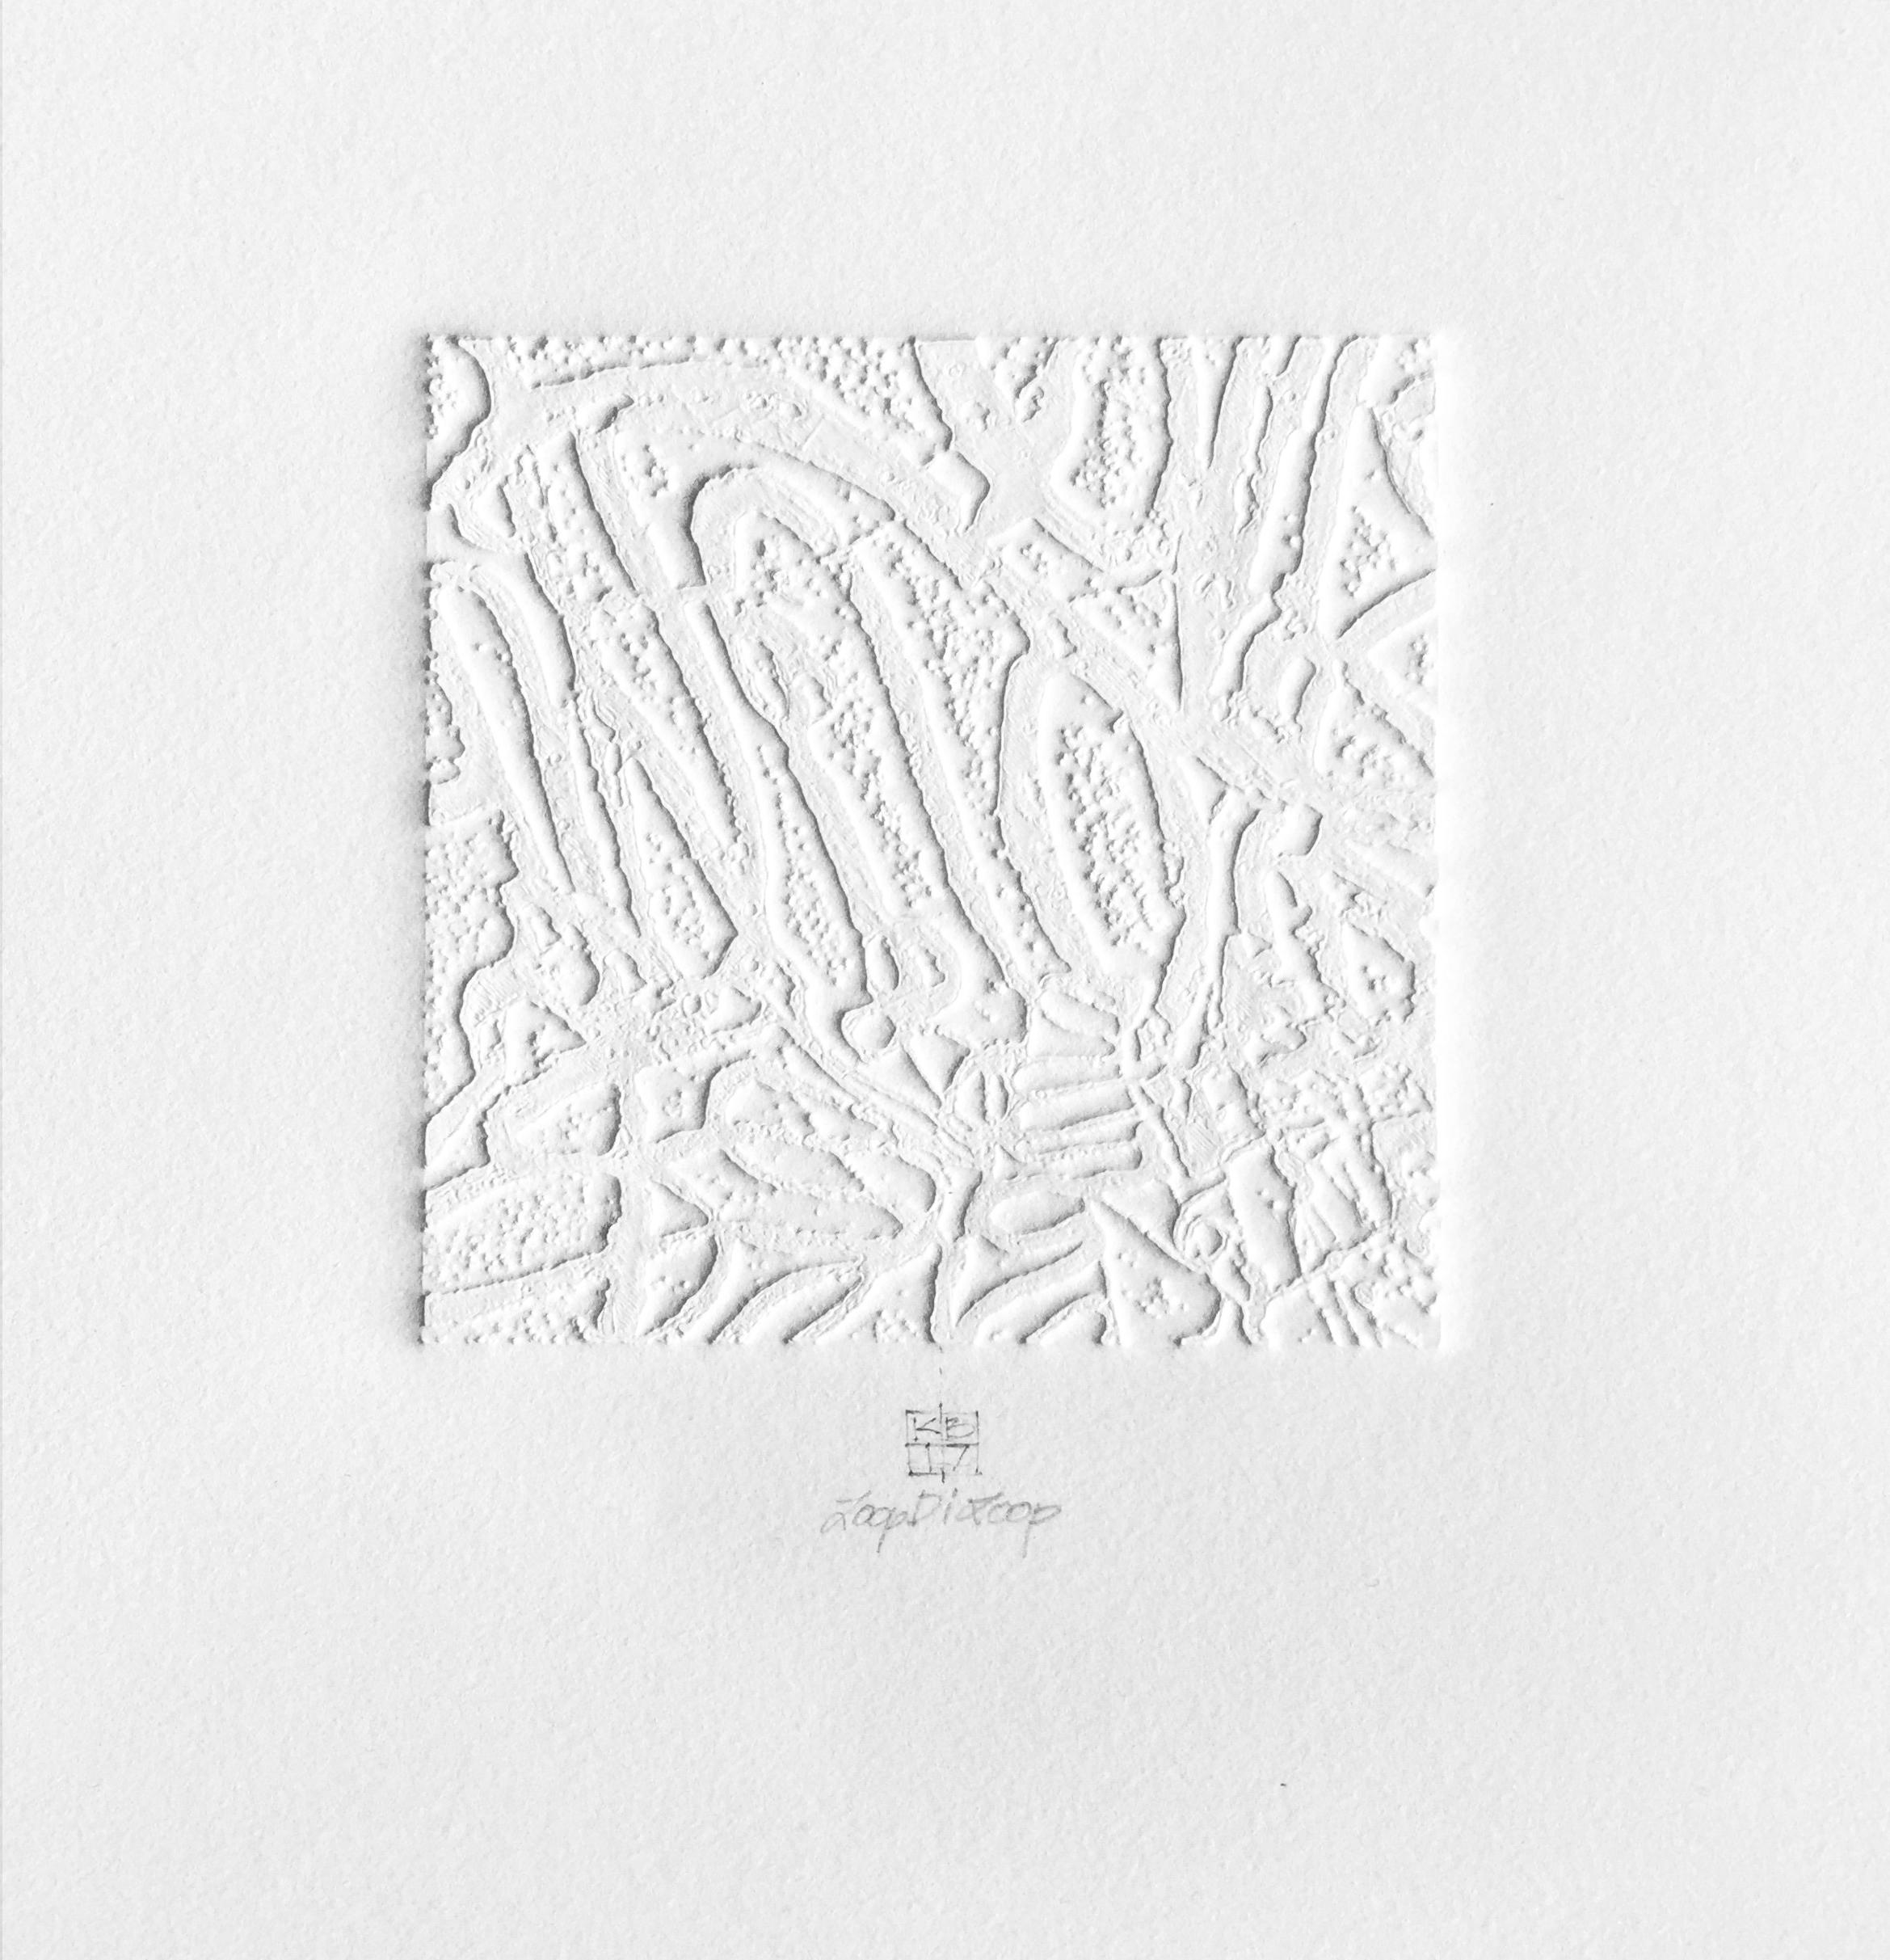 Karin Bruckner Abstract Print - LoopDiLoop 4, mixed media monoprint on paper, white, abstract and minimal